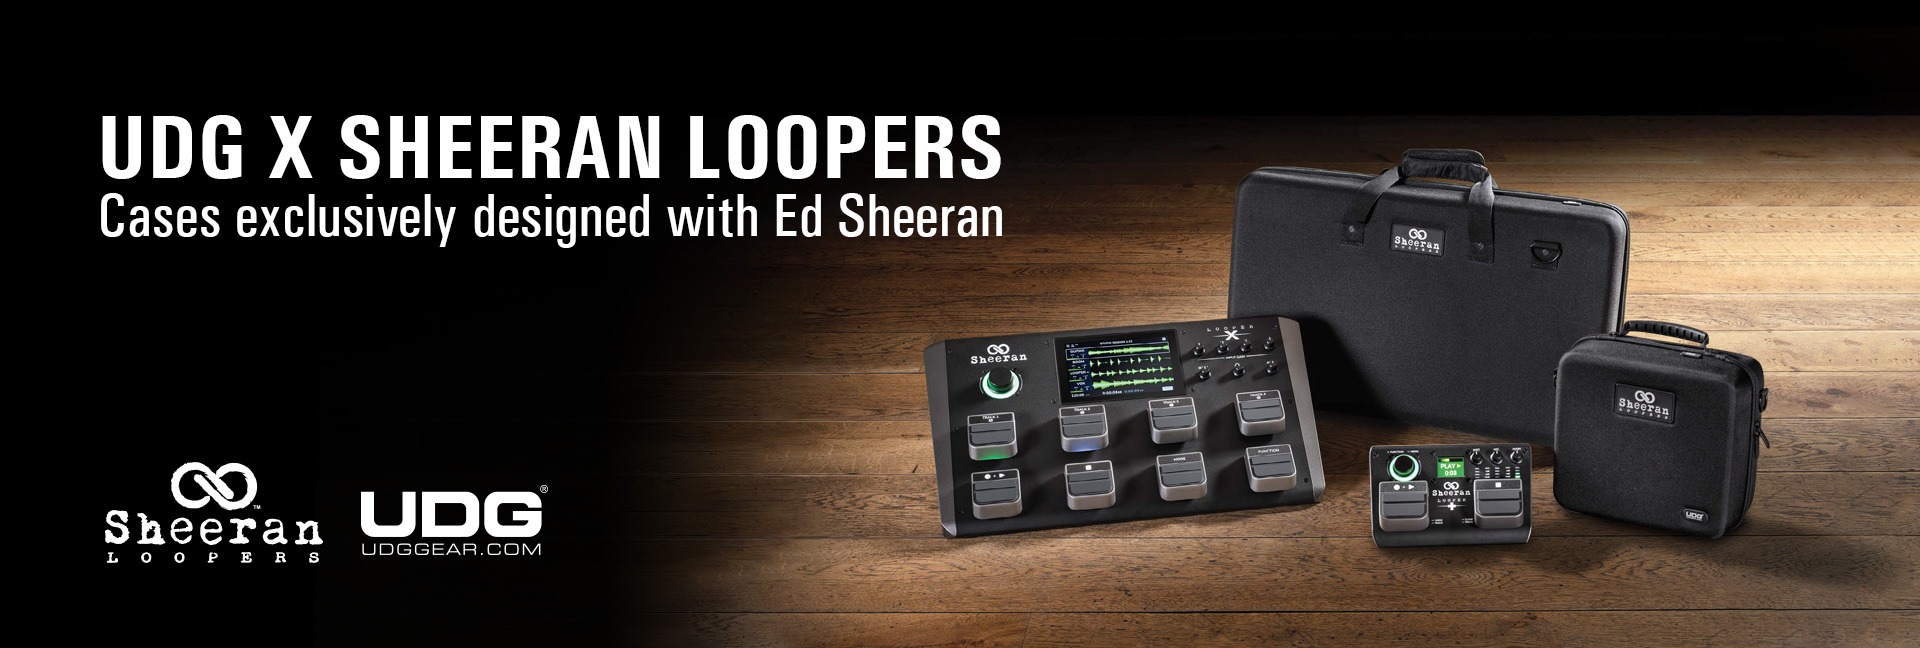 Sheeran Loopers Hardcases